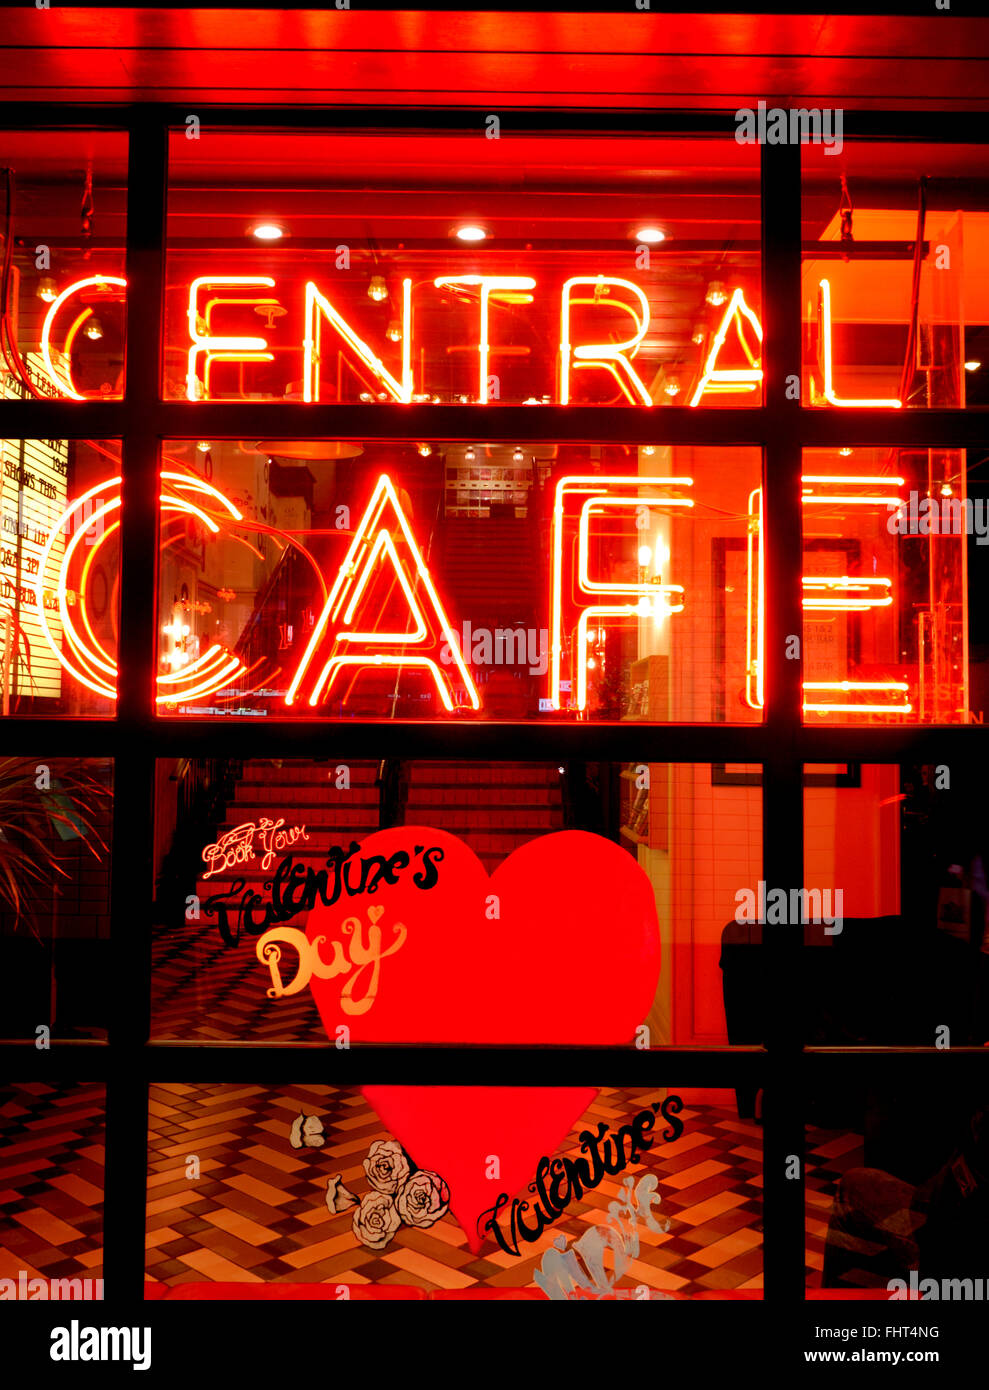 Magazzino centrale in stile cafe illuminati al neon di notte con il giorno di San Valentino promozione speciale Shaftesbury Avenue London REGNO UNITO Foto Stock